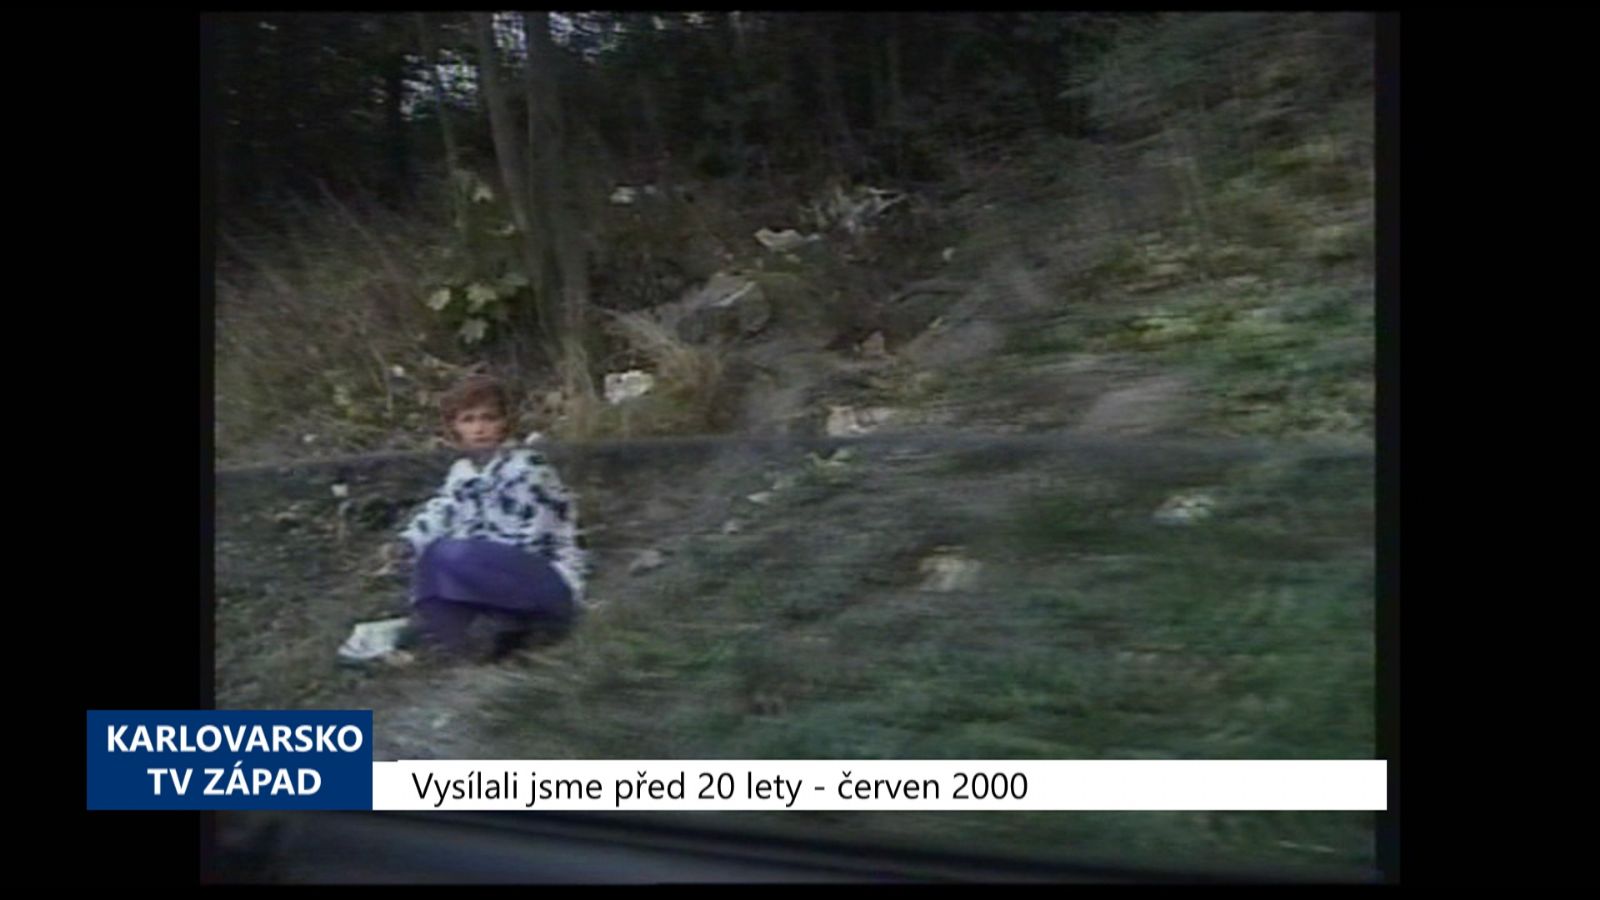 2000 – Chebsko: Okres vede v počtu nemocných syfilisem (TV Západ)  